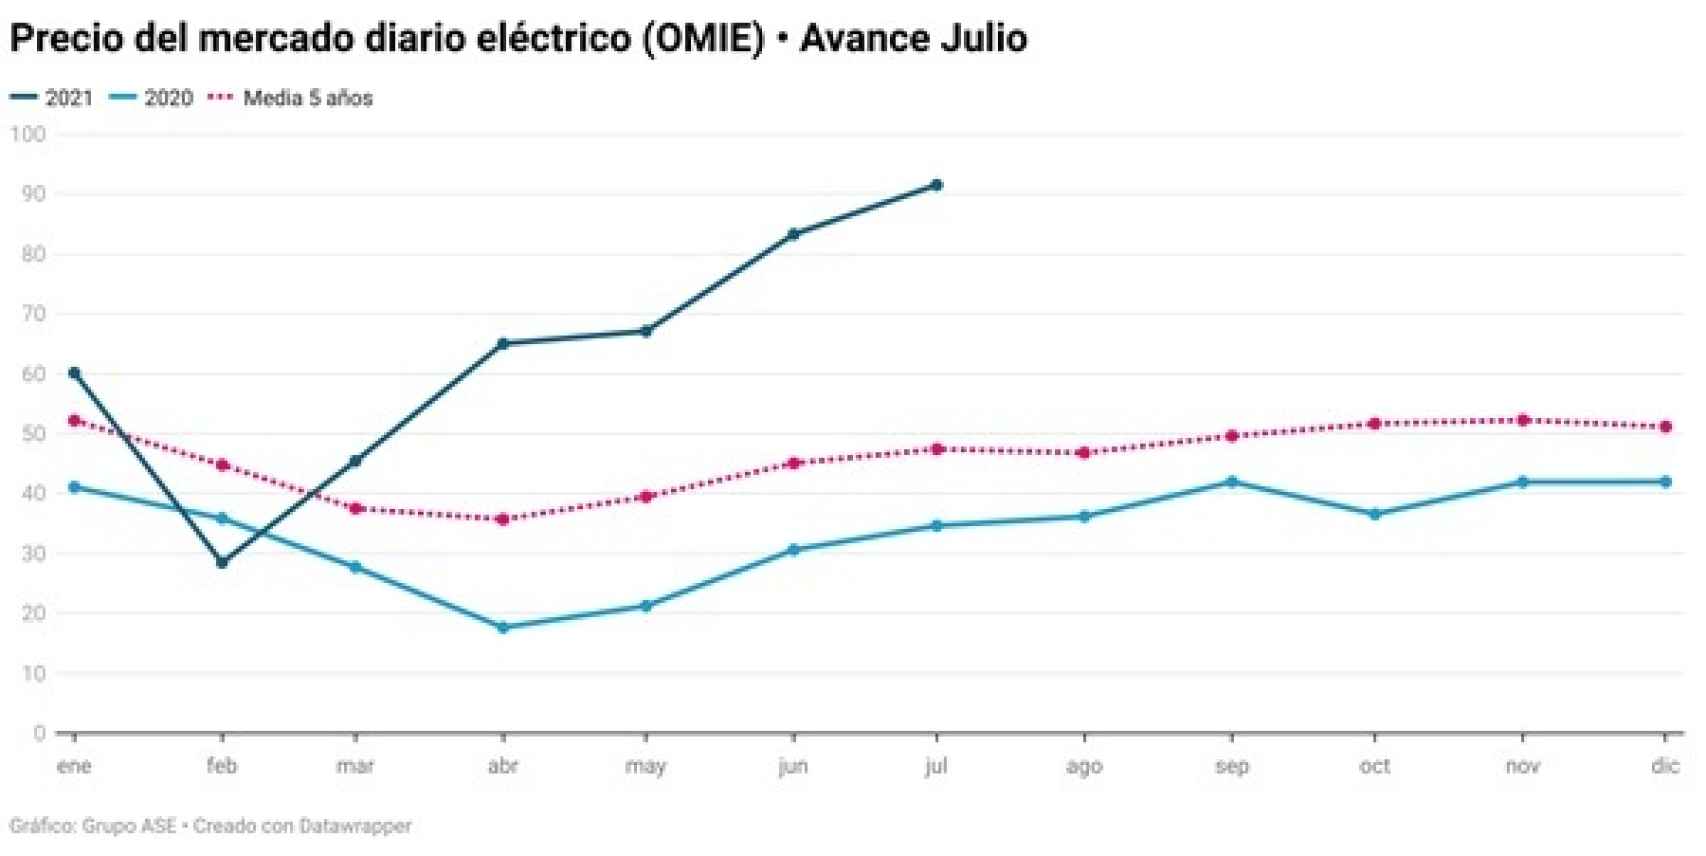 Comparativa de precios del mercado eléctrico. Fuente: Grupo ASE